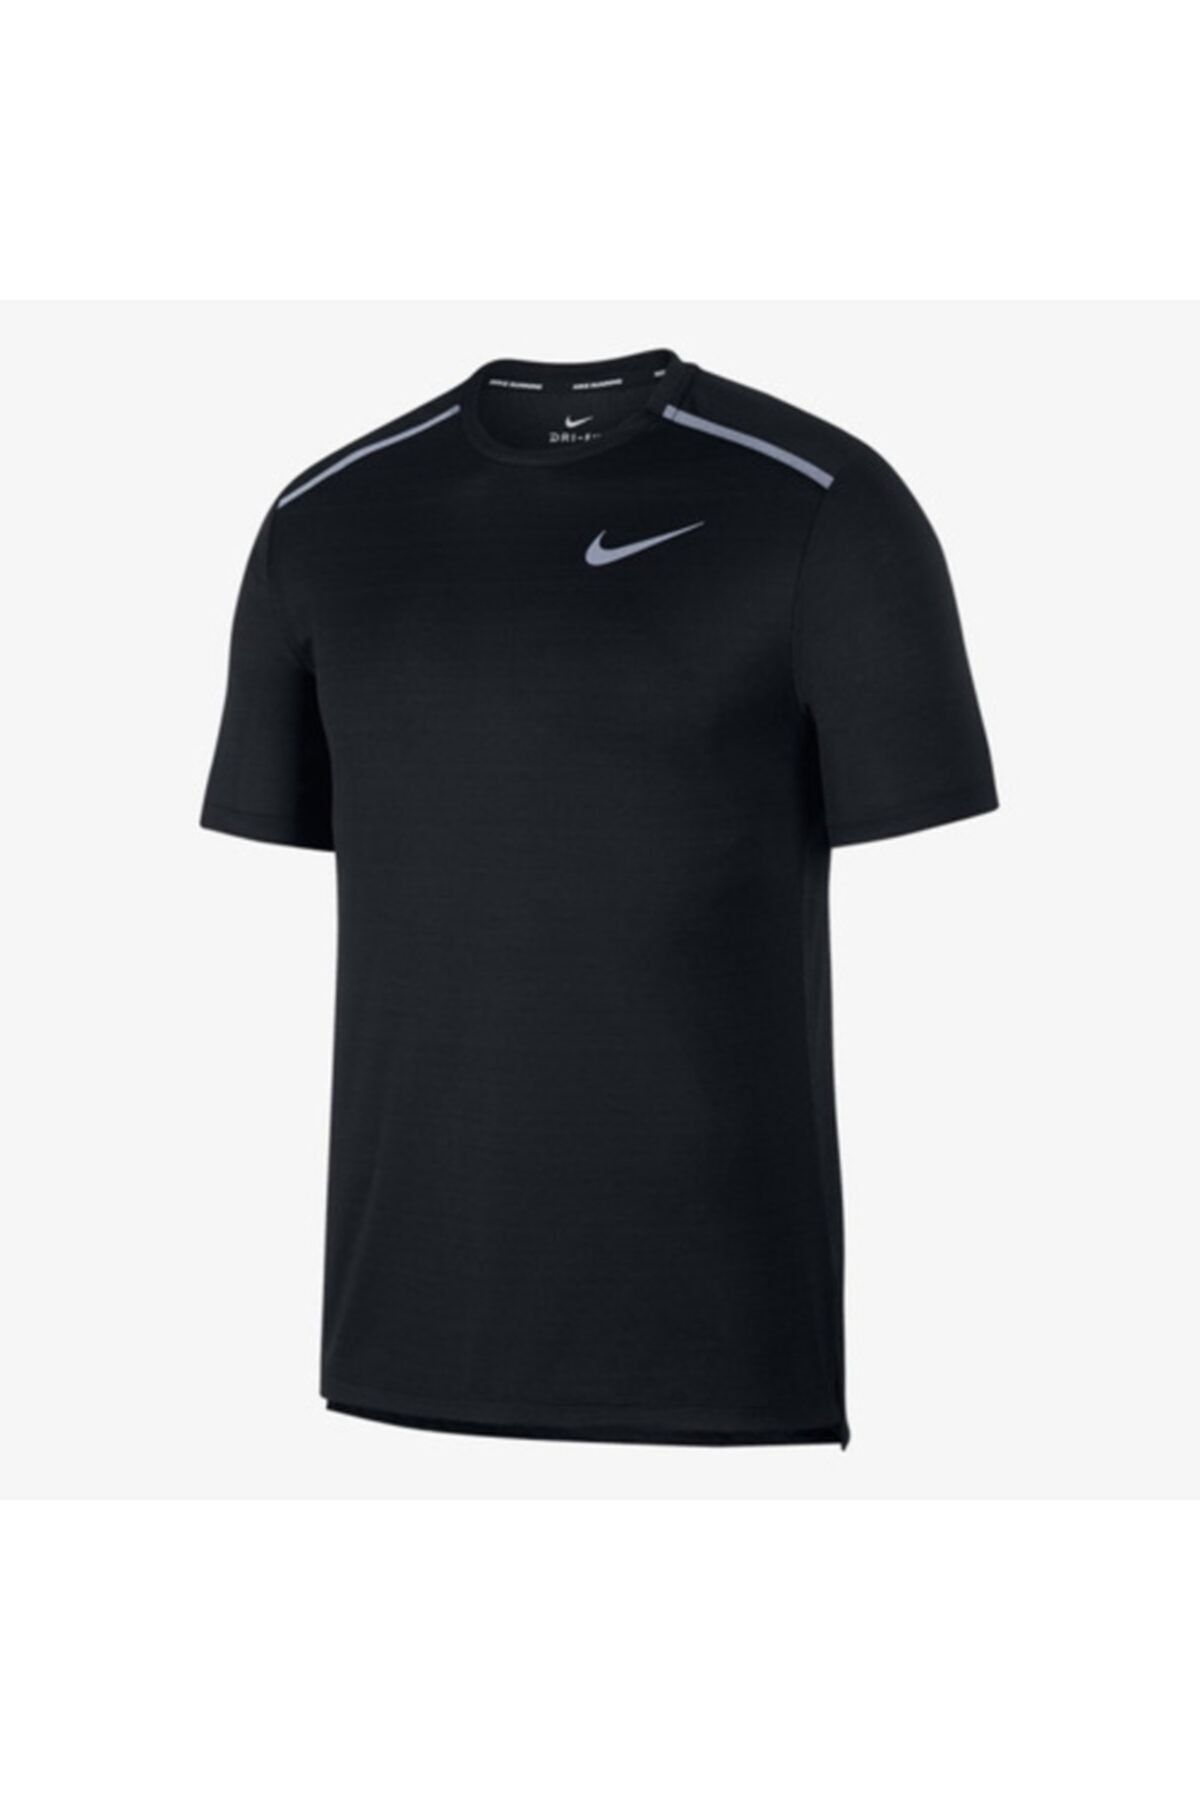 Nike Erkek Tişört Siyah Dri-fit Black Dry Miler Running Cu0326-010